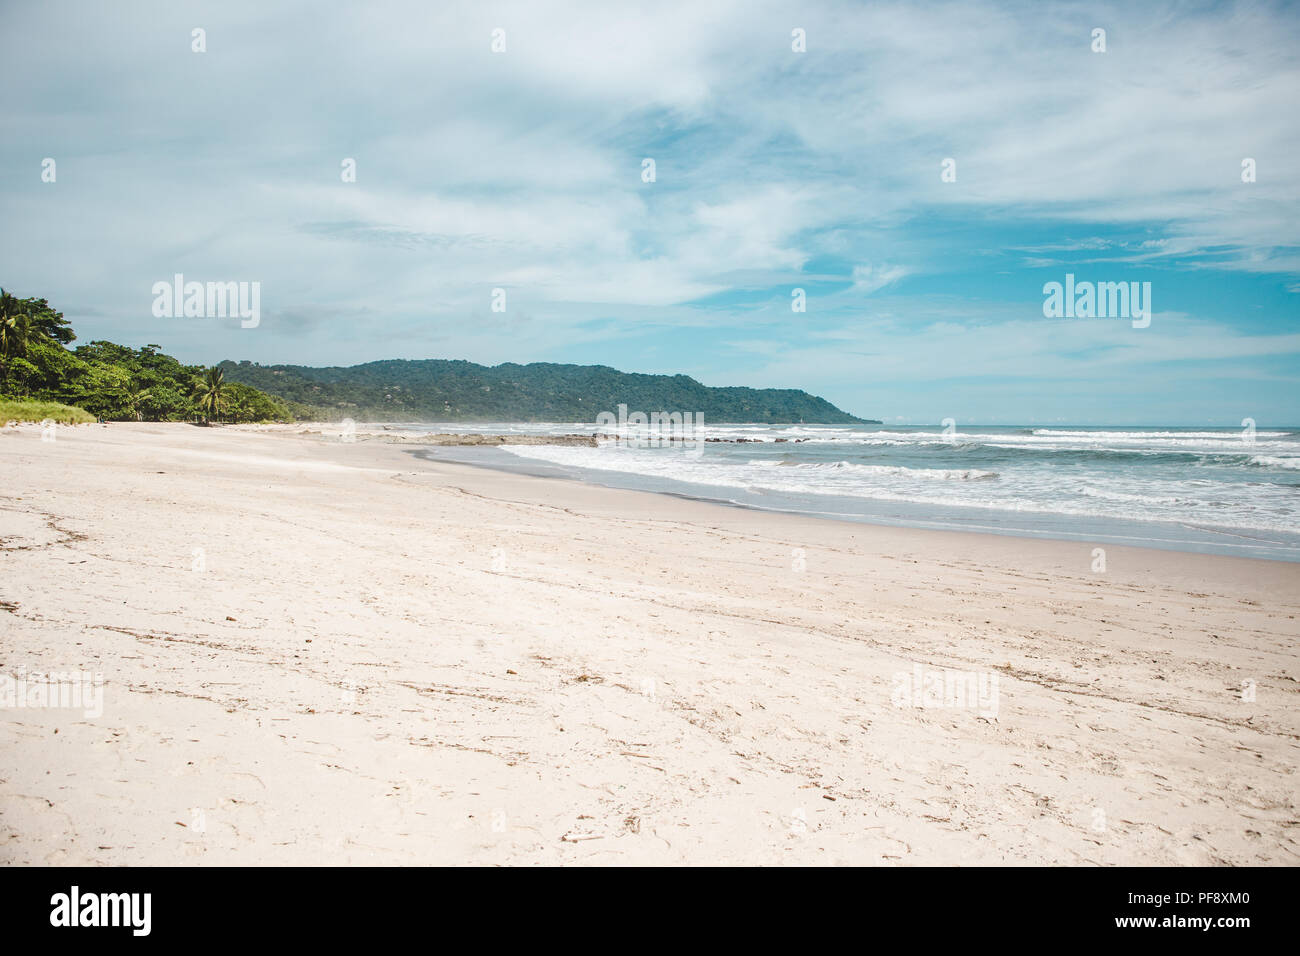 Saubere Sandstrand von Playa Carmen, Santa Teresa, Puntaarenas Provinz in Costa Rica an einem heißen Sommertag mit blauer Himmel Stockfoto